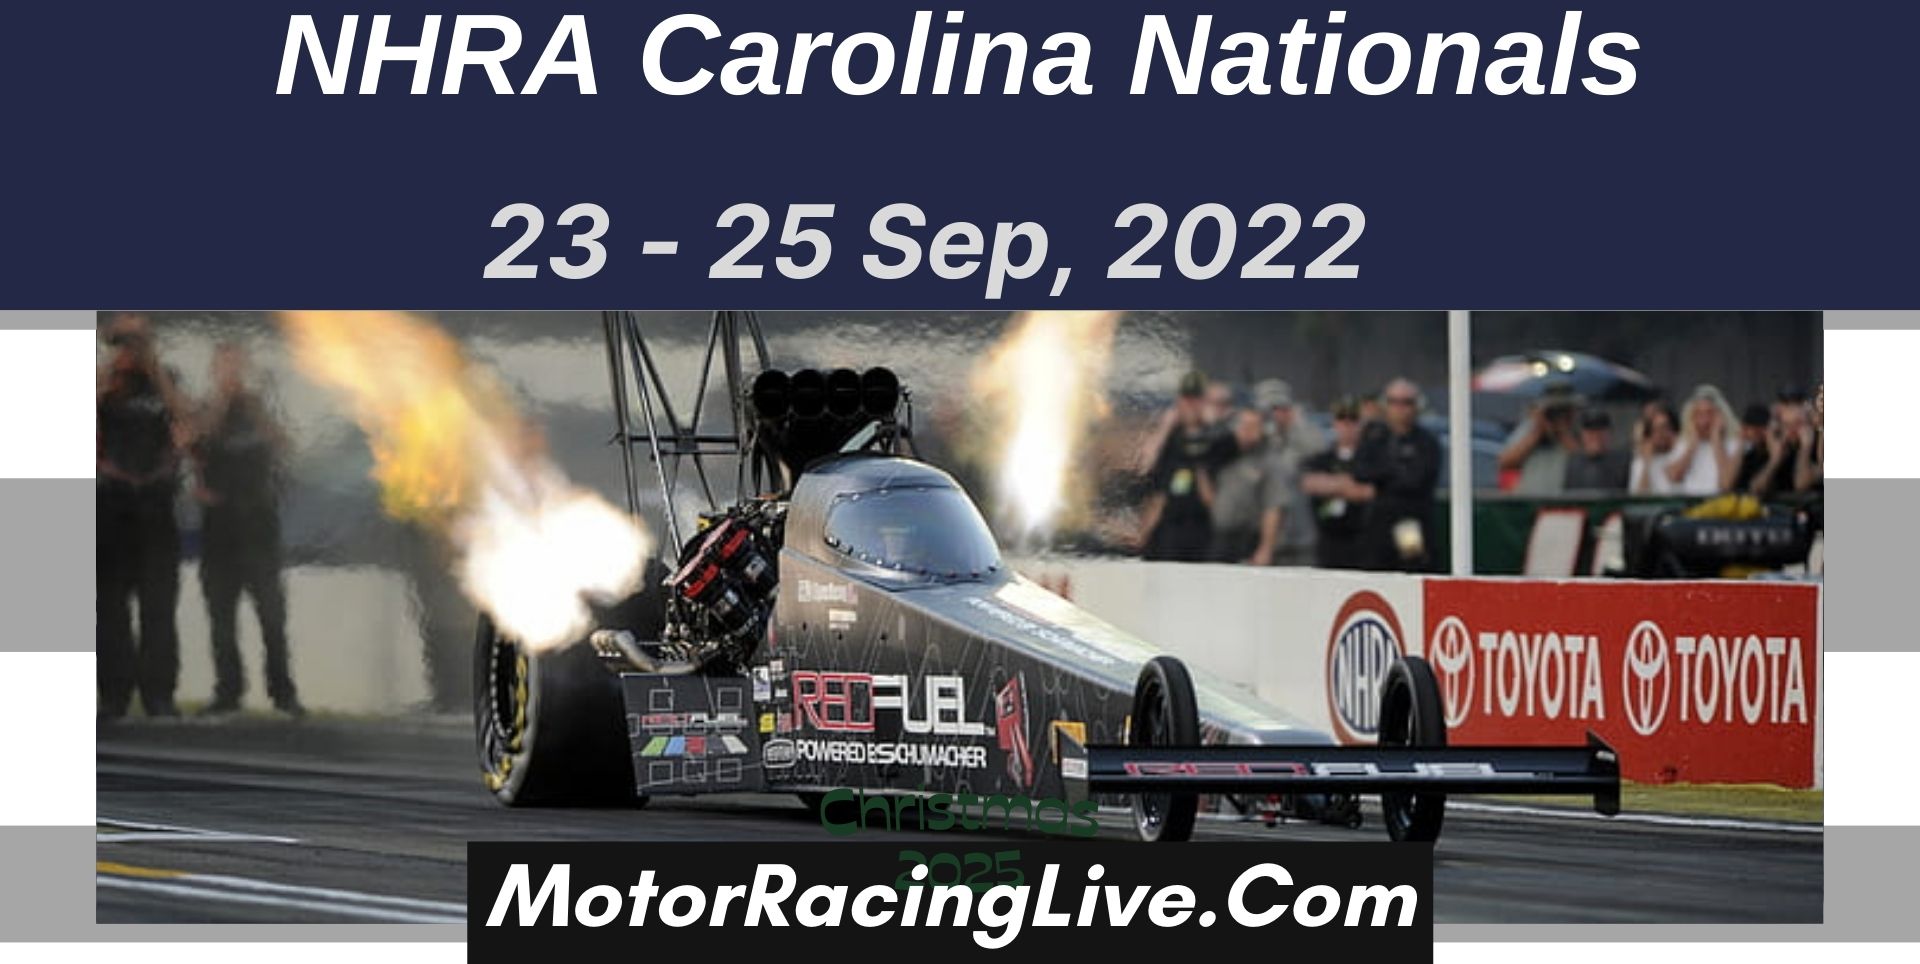 NHRA Carolina Nationals 2022 Live Stream